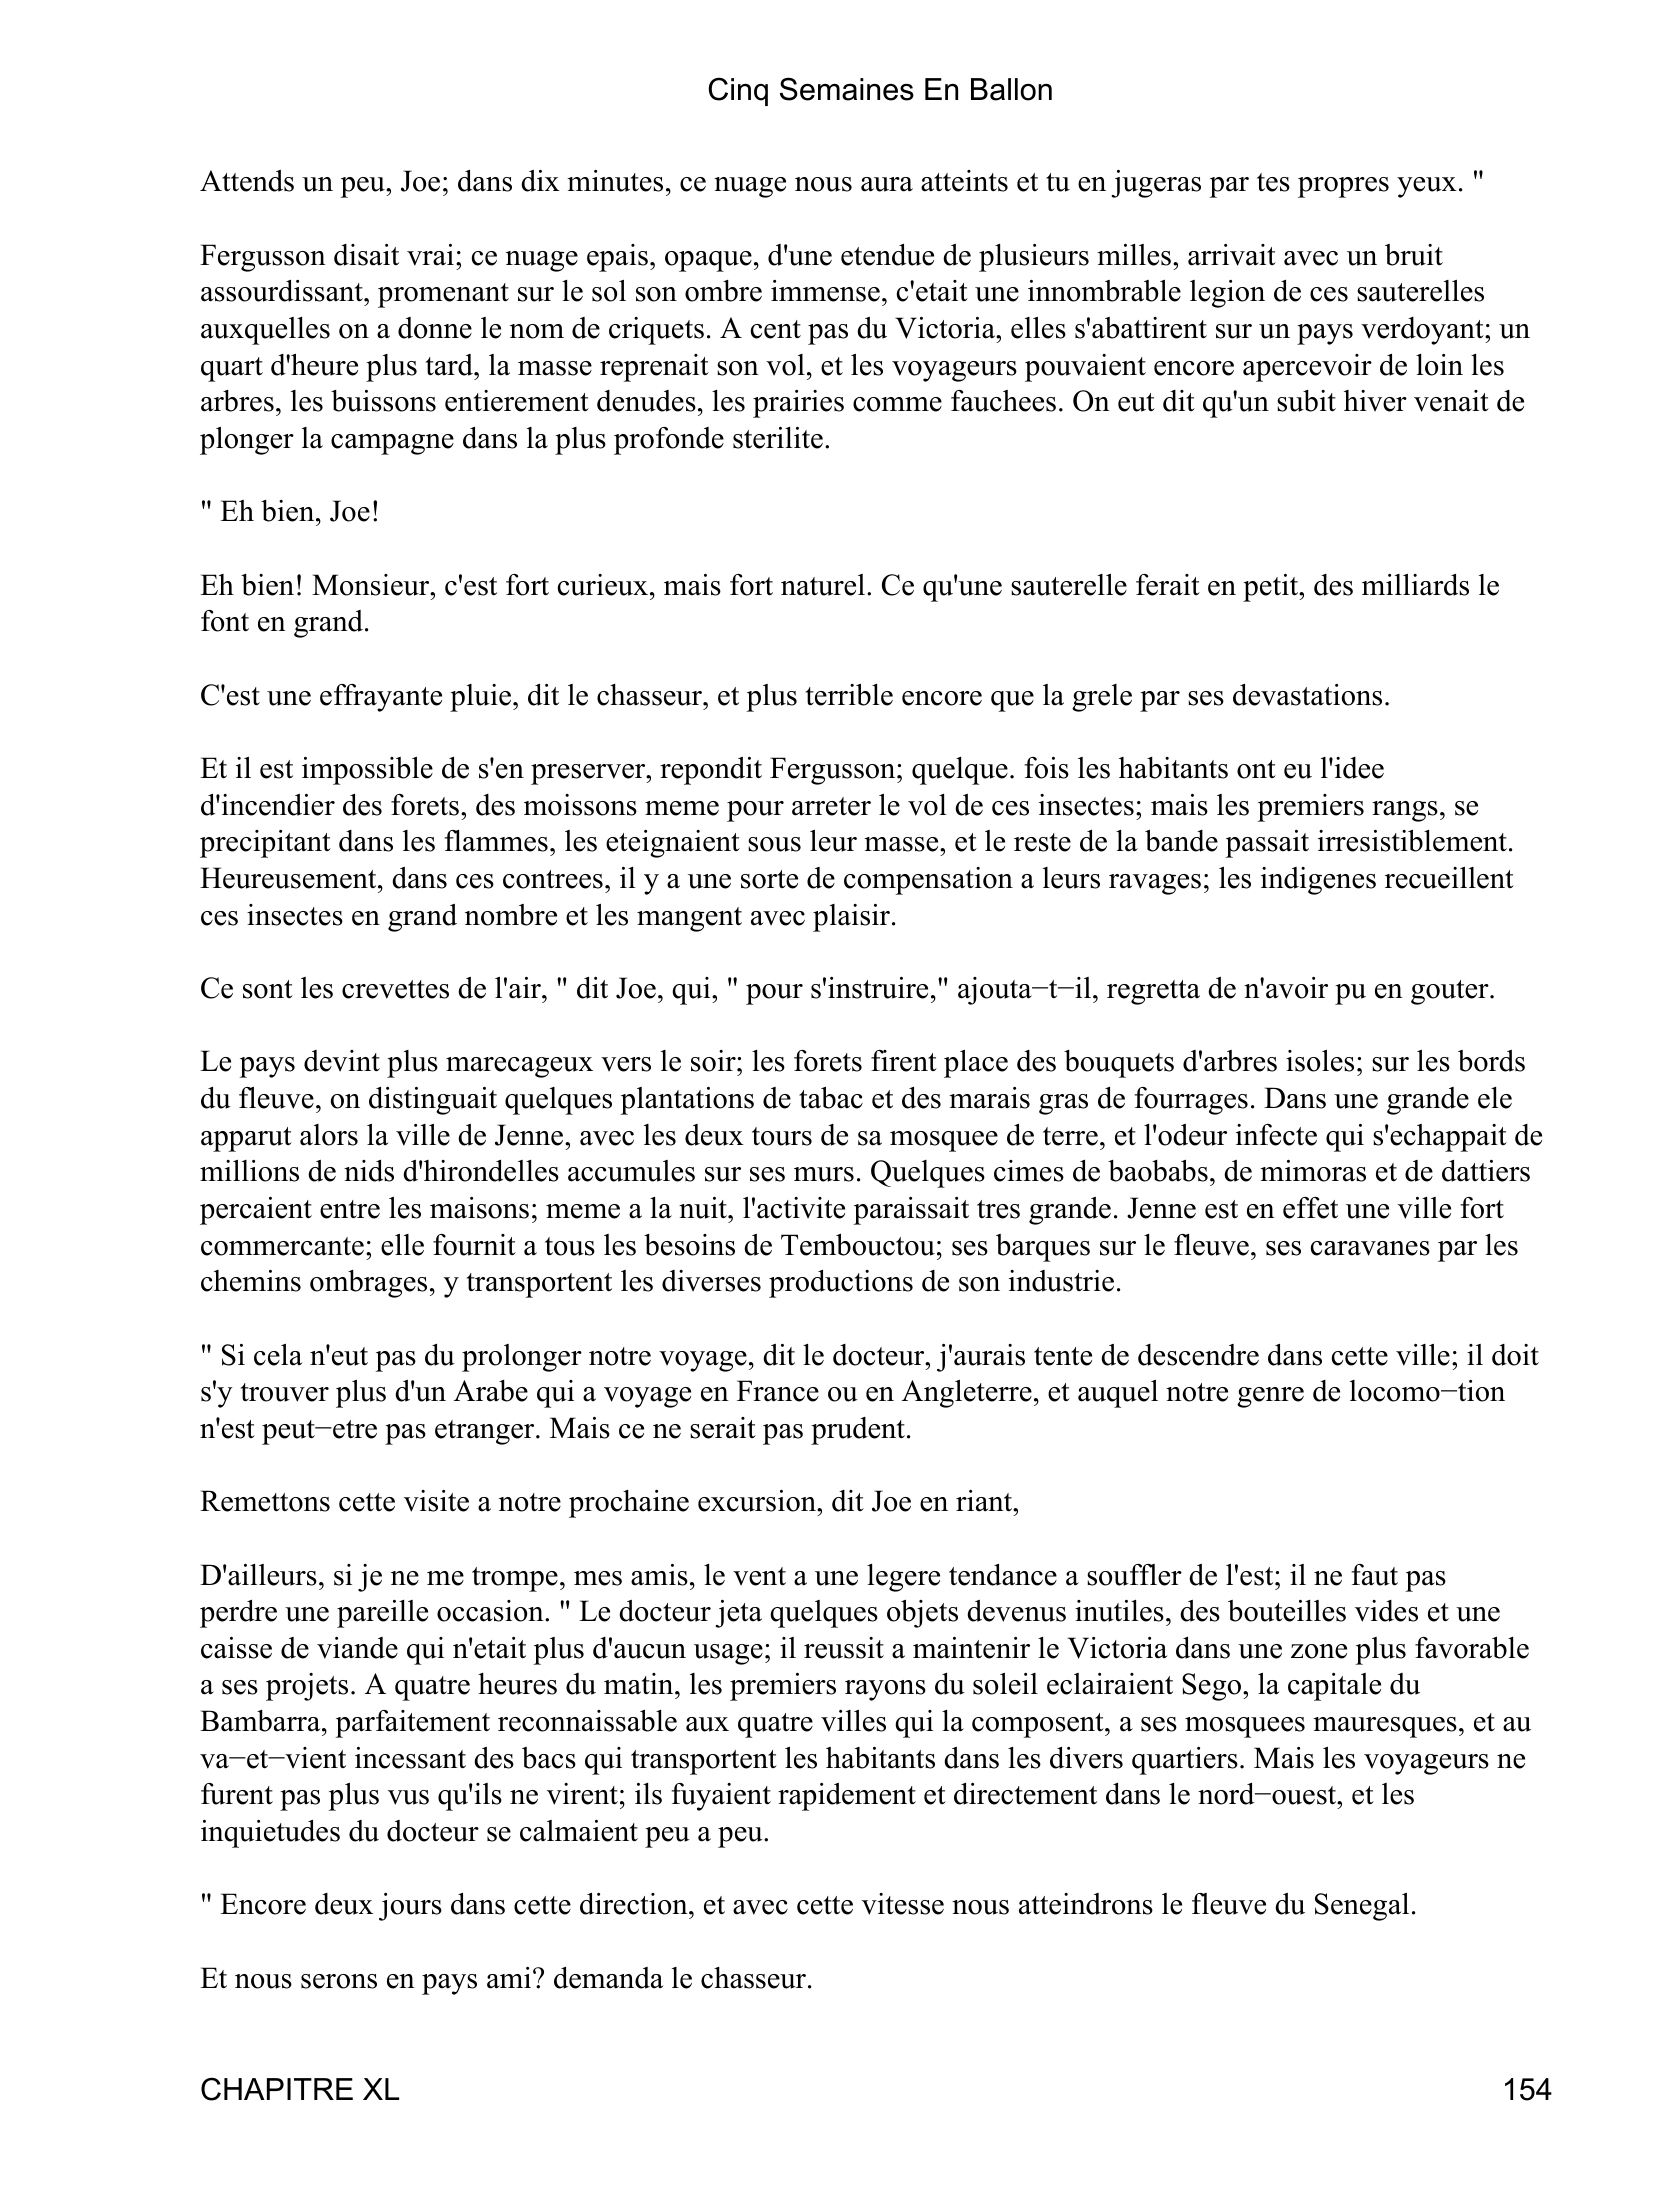 Prévisualisation du document Cinq Semaines En Ballon

CHAPITRE XL
Inquietudes du docteur Fergusson.